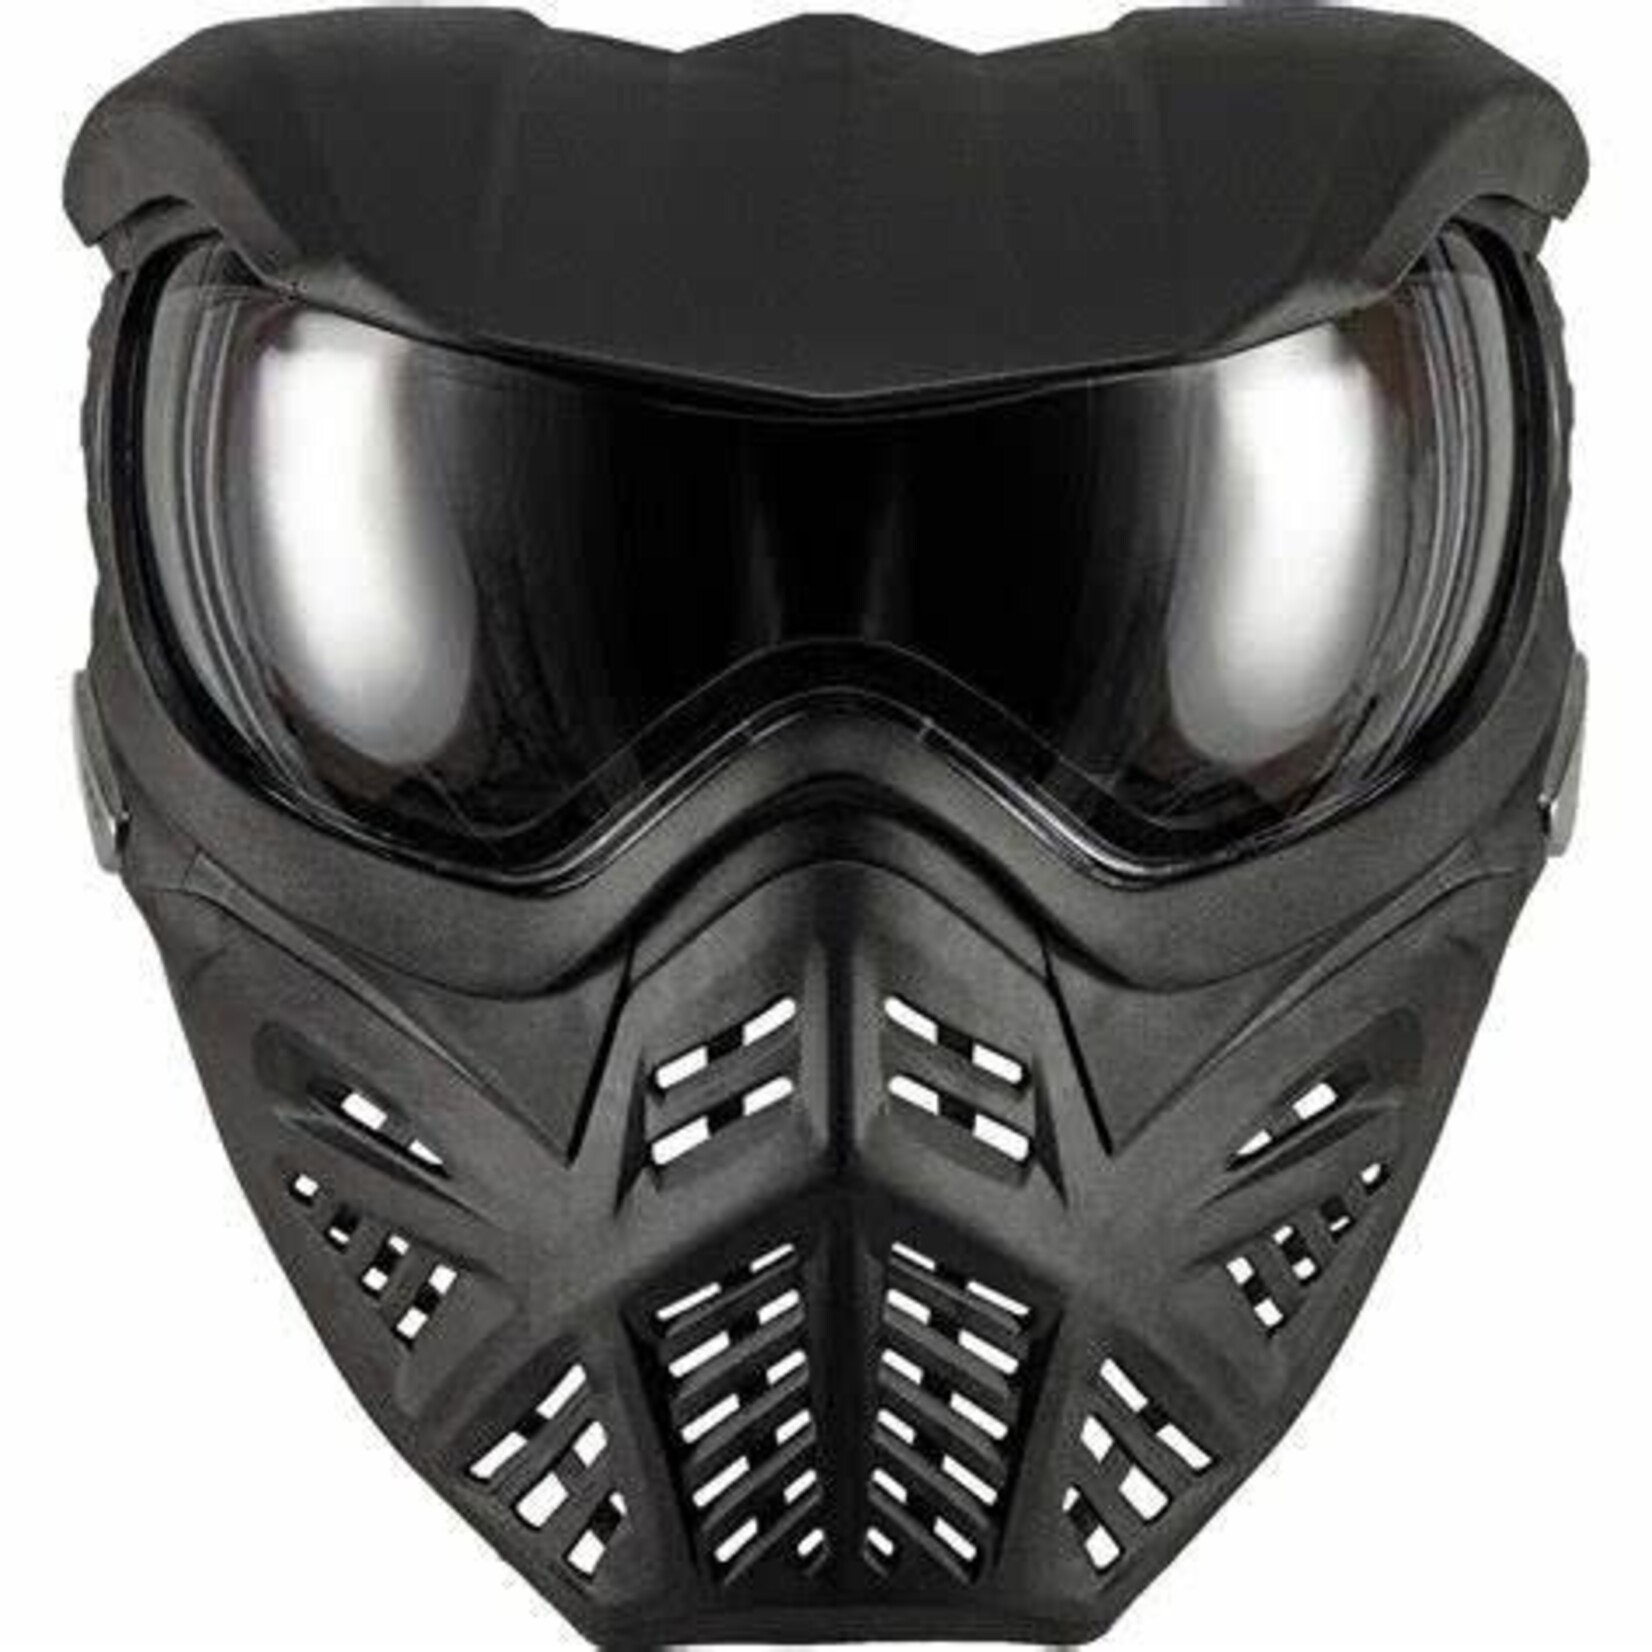 VForce V-Force Grill 2.0 Thermal Mask